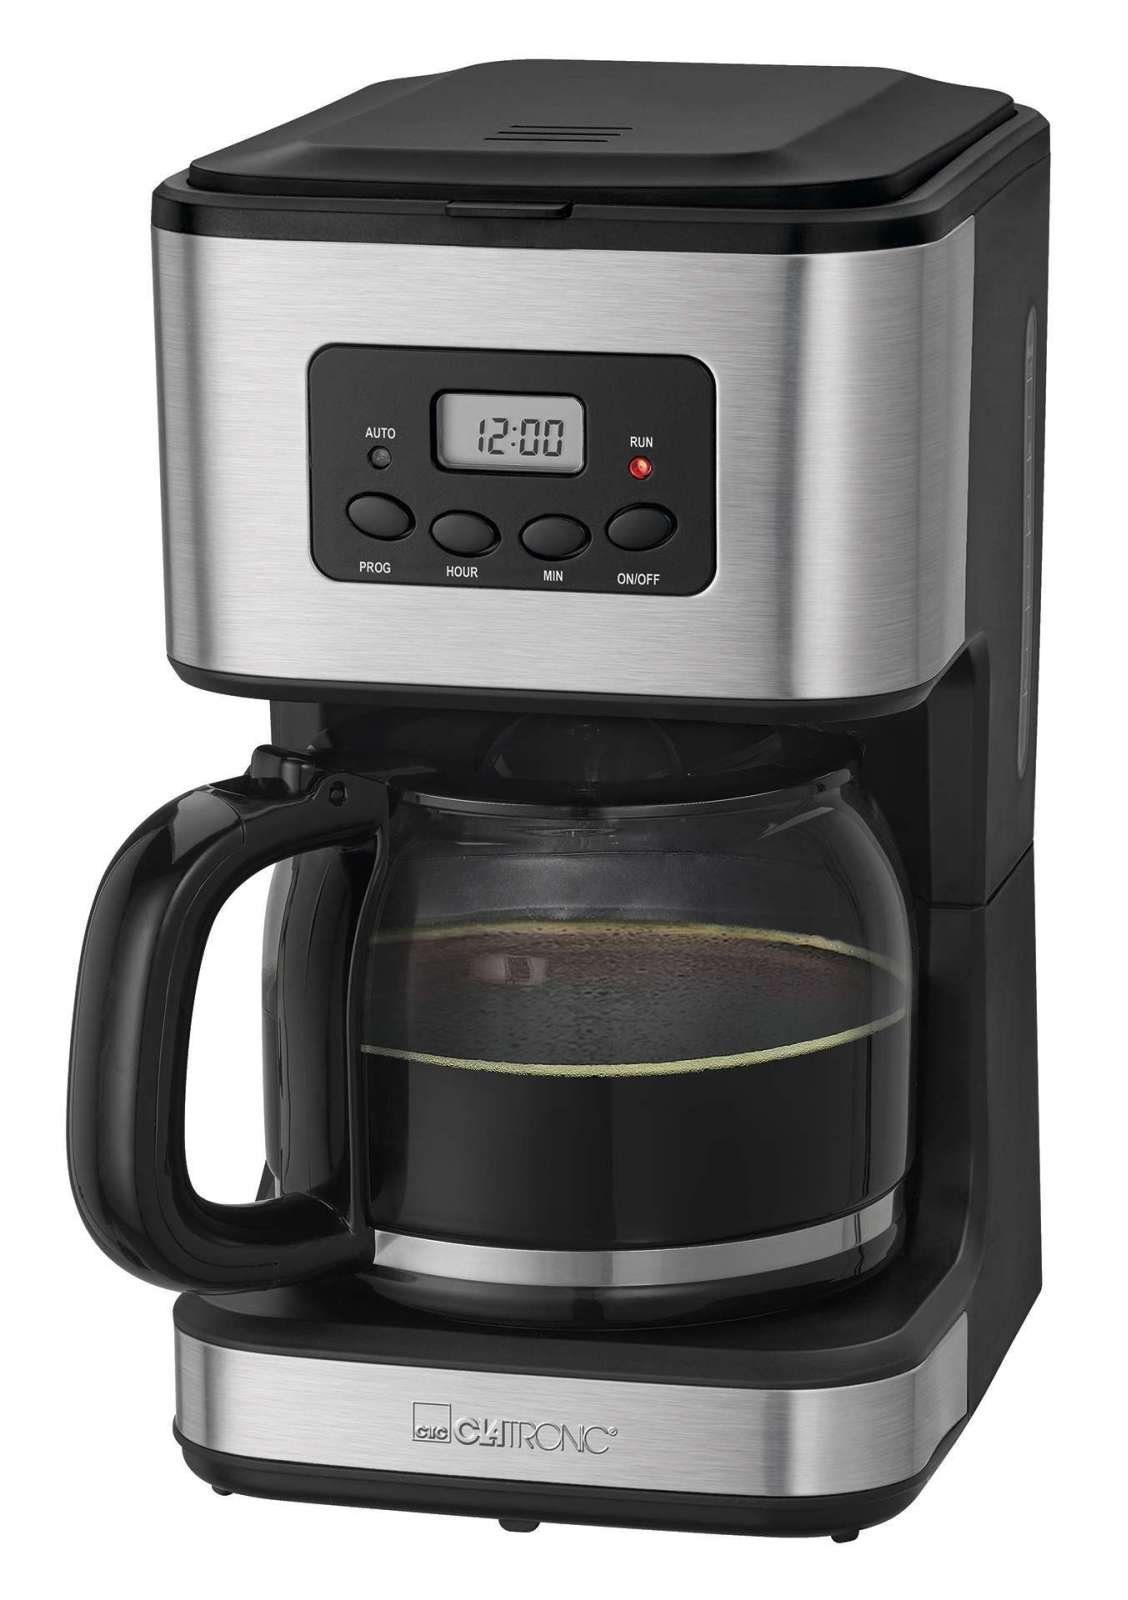 CLATRONIC Filterkaffeemaschine CLATRONIC Kaffeeautomat Kaffeemaschine 12-14 Tassen 1,5 Liter KA 3642